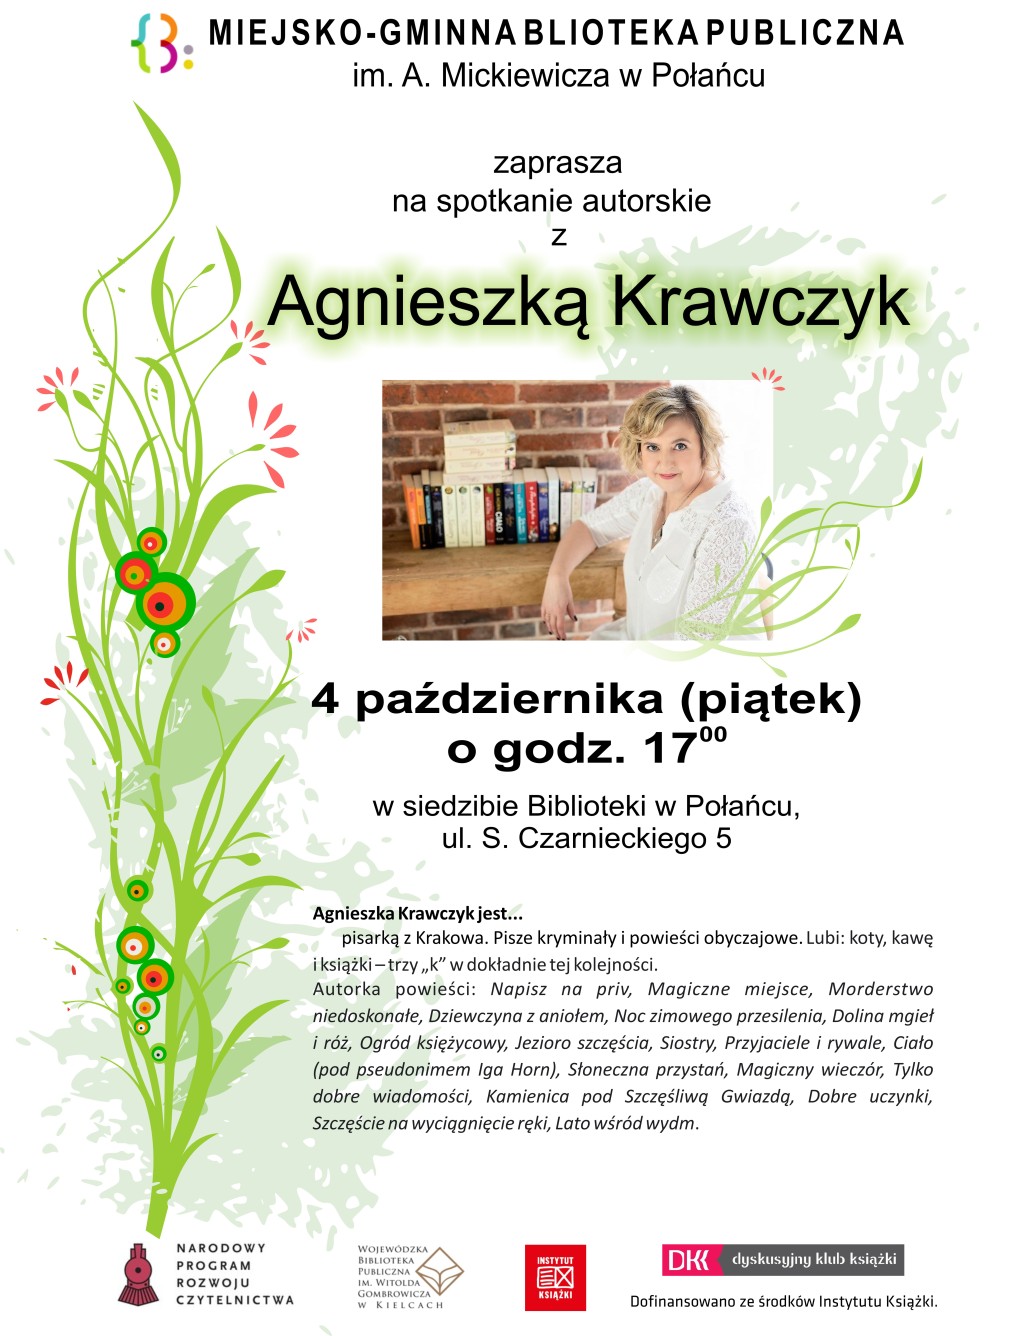 Spotkanie autorskie Agnieszka Krawczyk październik 2019